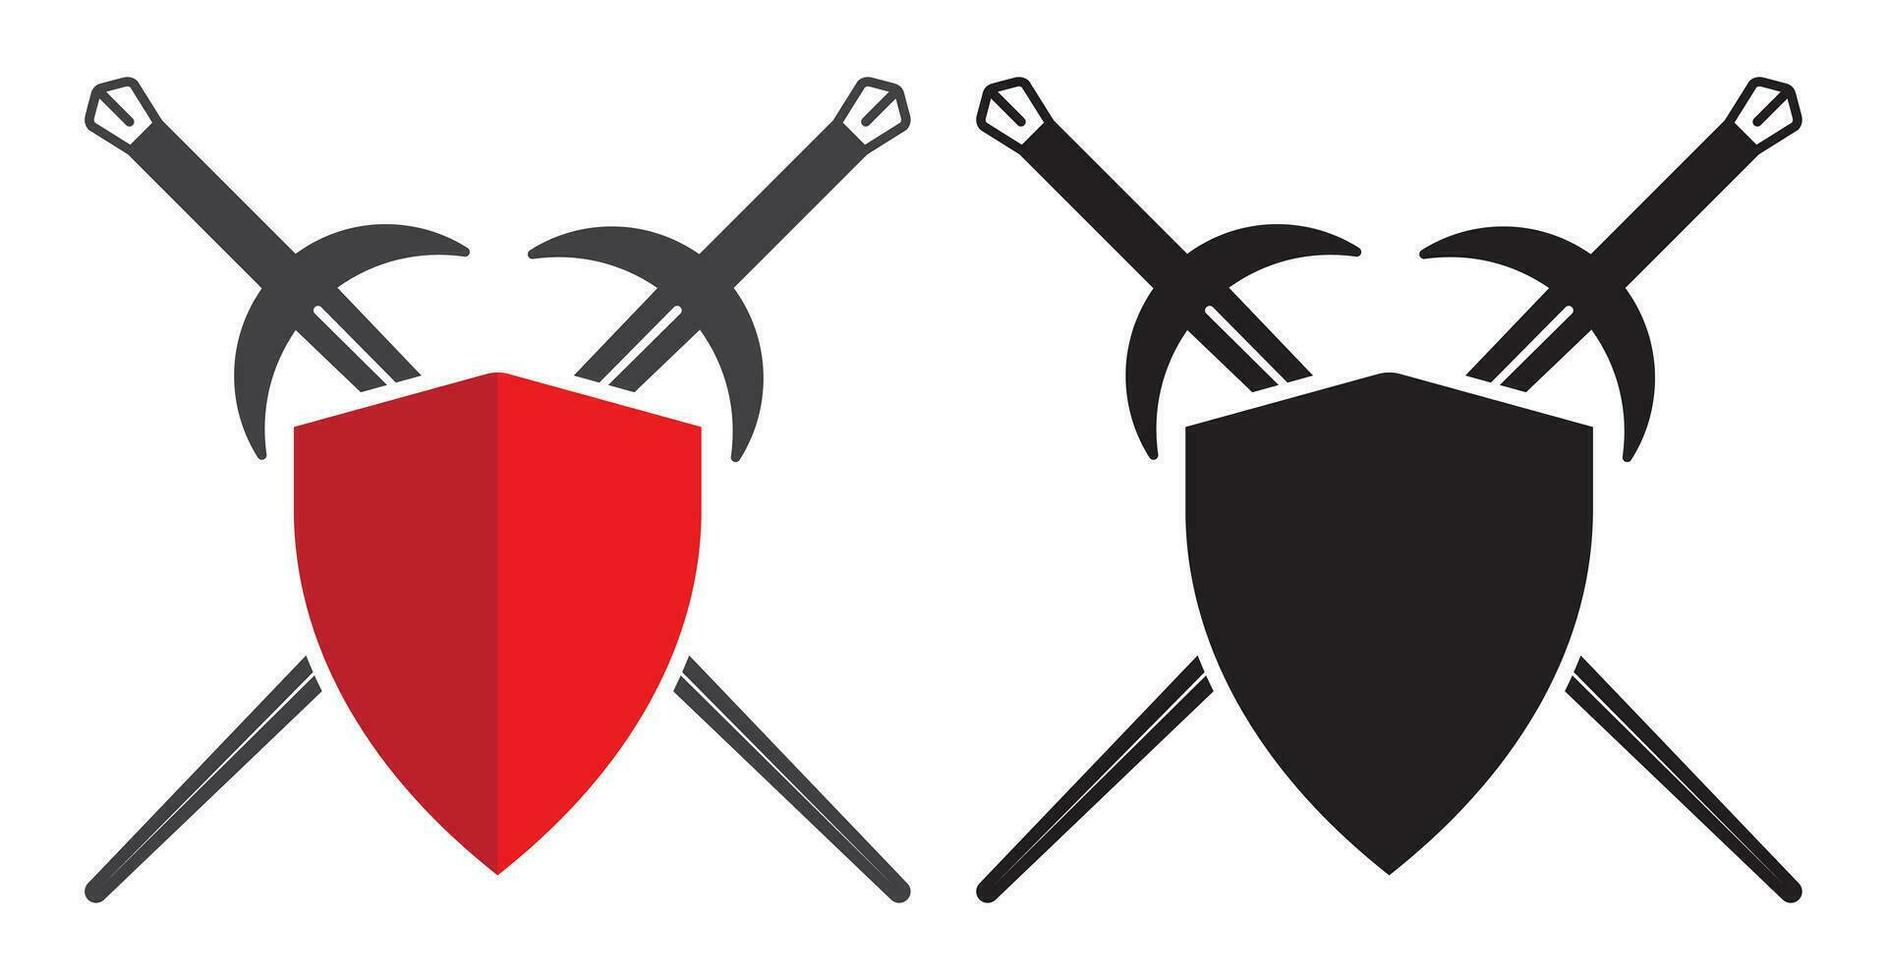 espada y proteger o cruzado espada vaina en el proteger - plano vector íconos para aplicaciones y sitios web